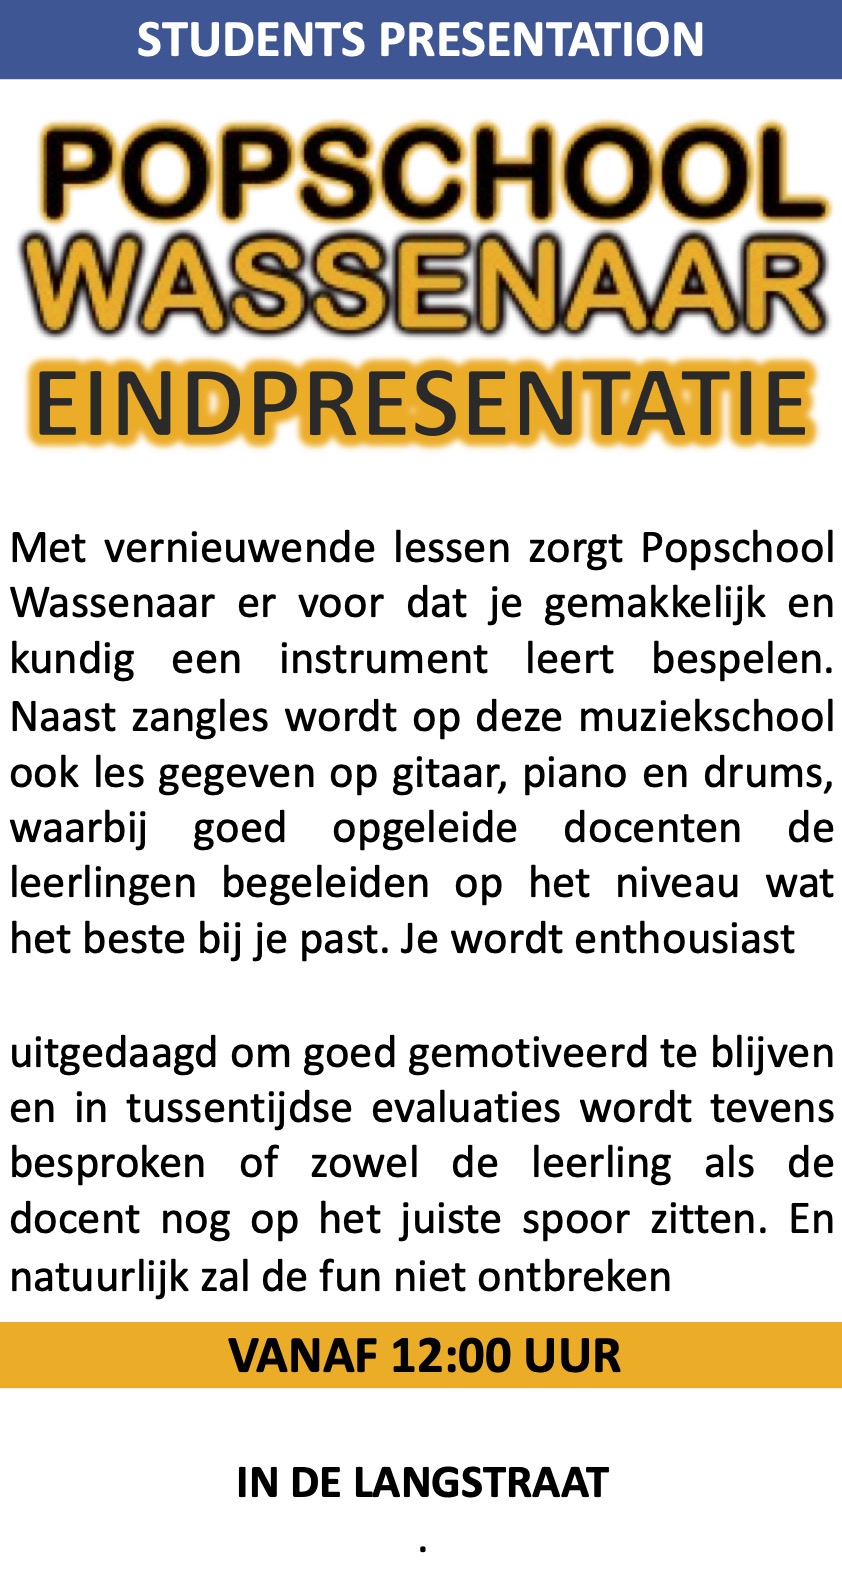 PopSchool Wassenaar Eindpresentatie in de Langstraat